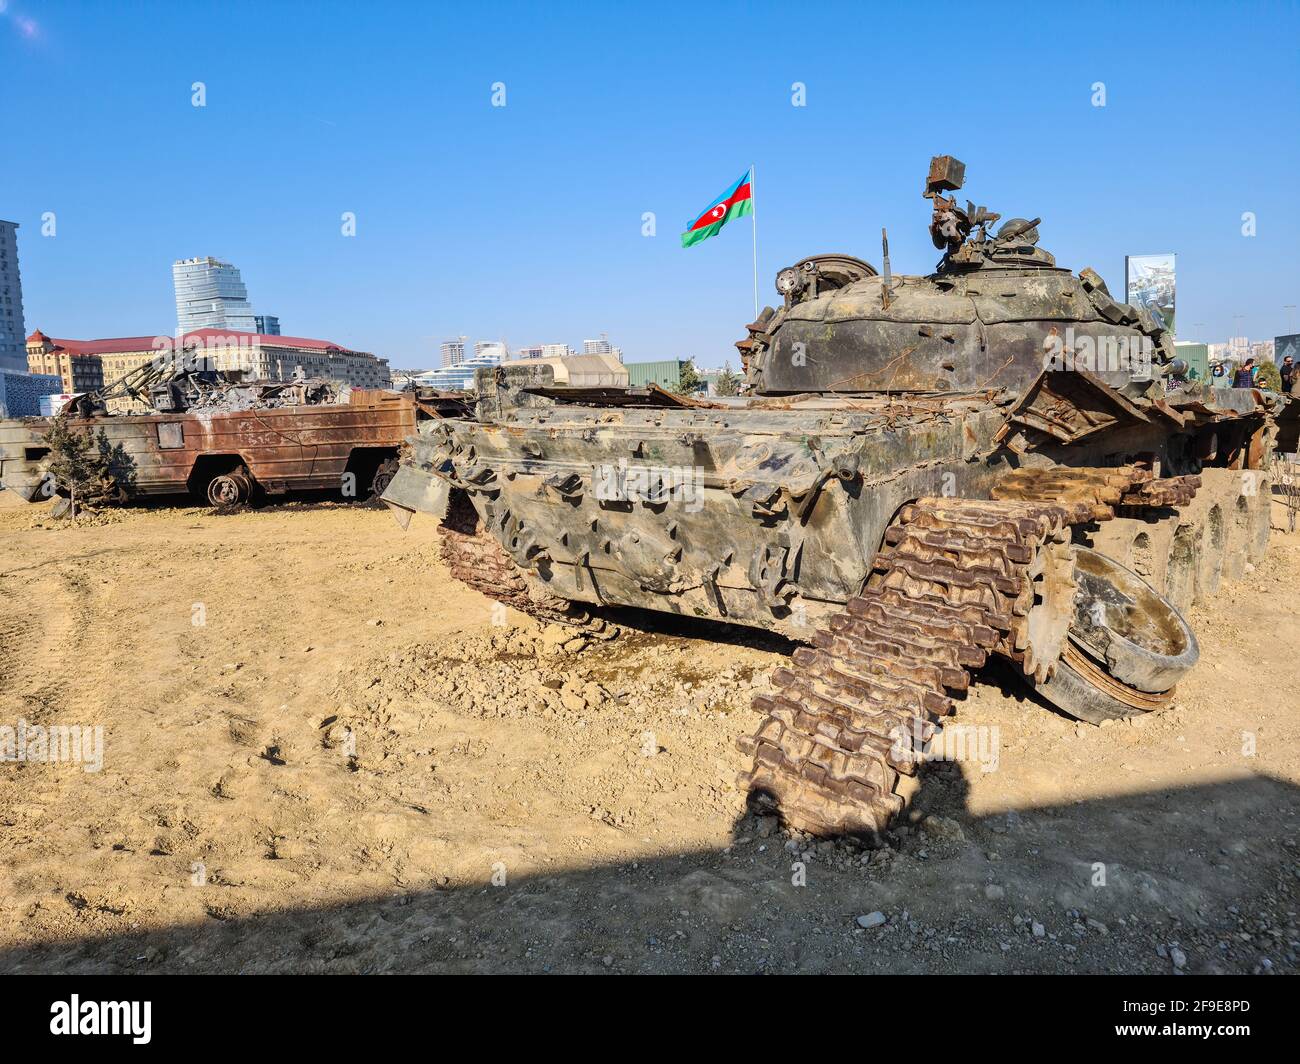 T-72 le principal char de bataille russe soviétique, détruit - Bakou, Azerbaïdjan, 04-16-2021 Banque D'Images